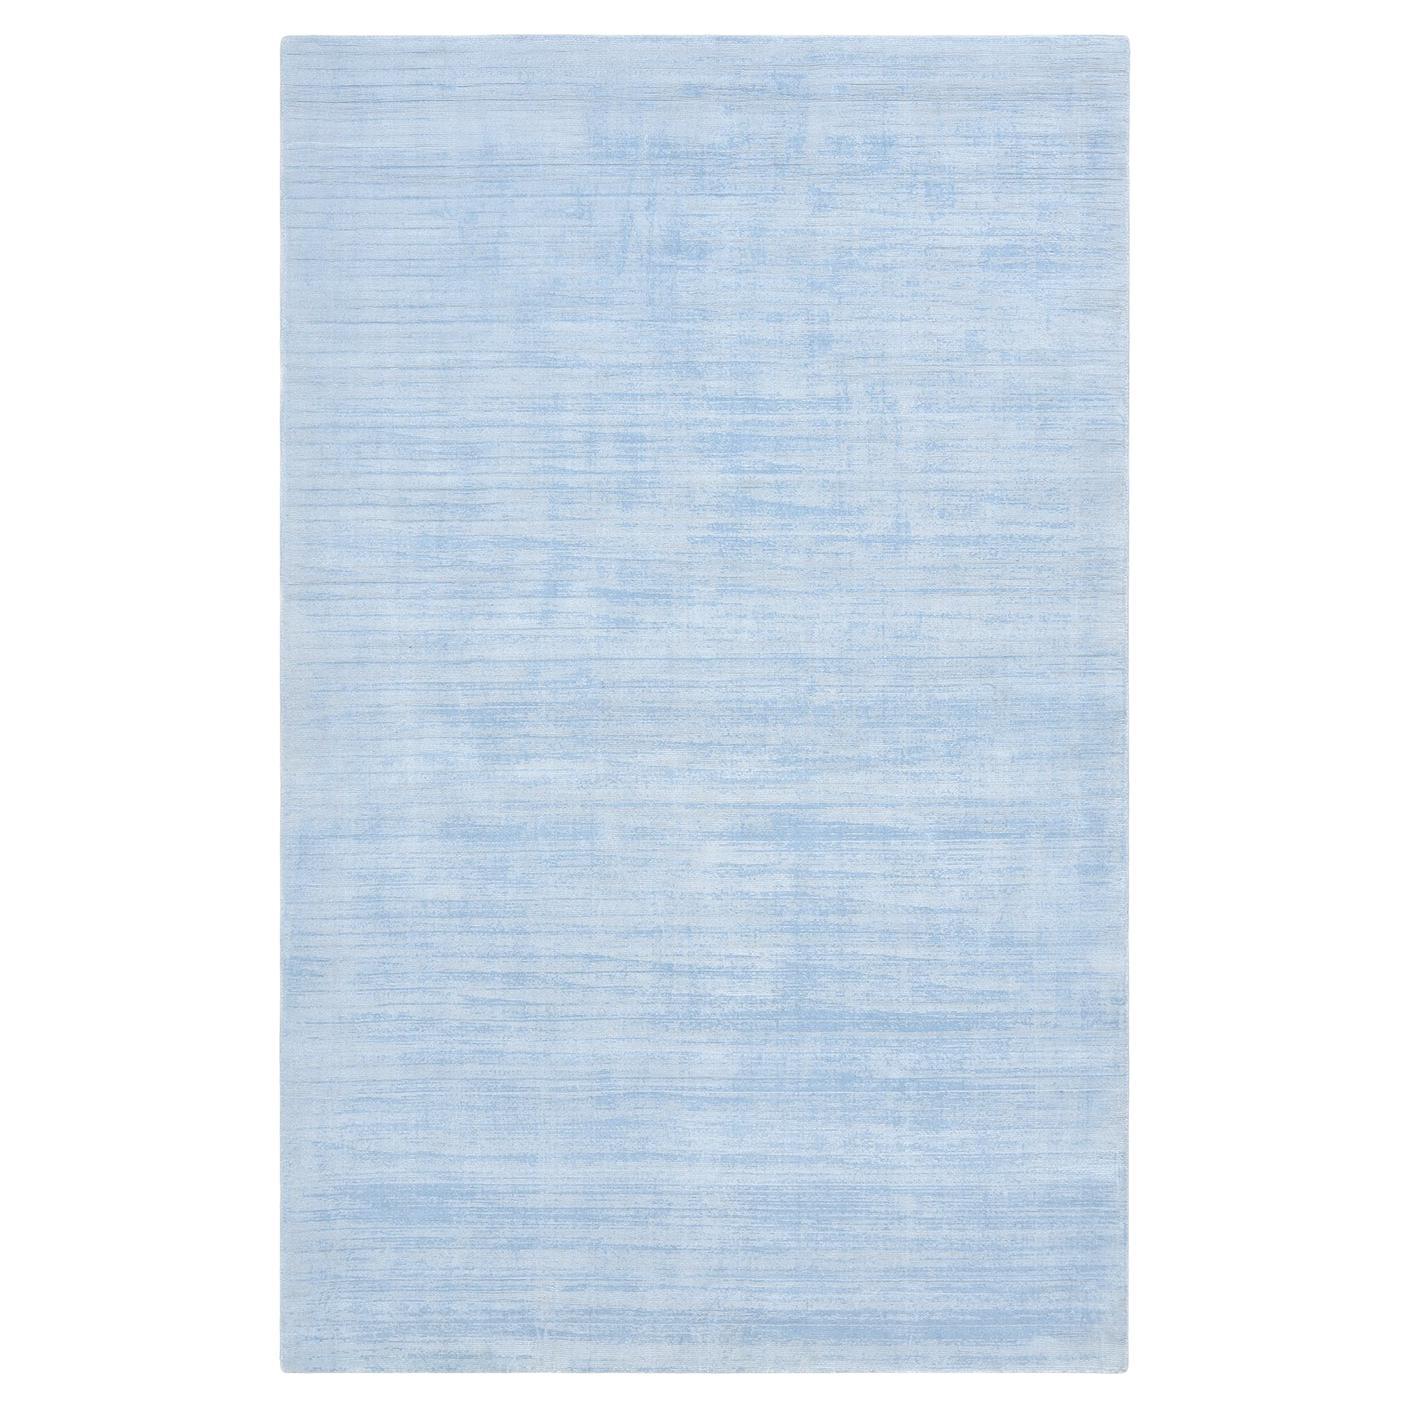 Tapis moderne et solide bleu 5 x 8, noué à la main, pour une surface